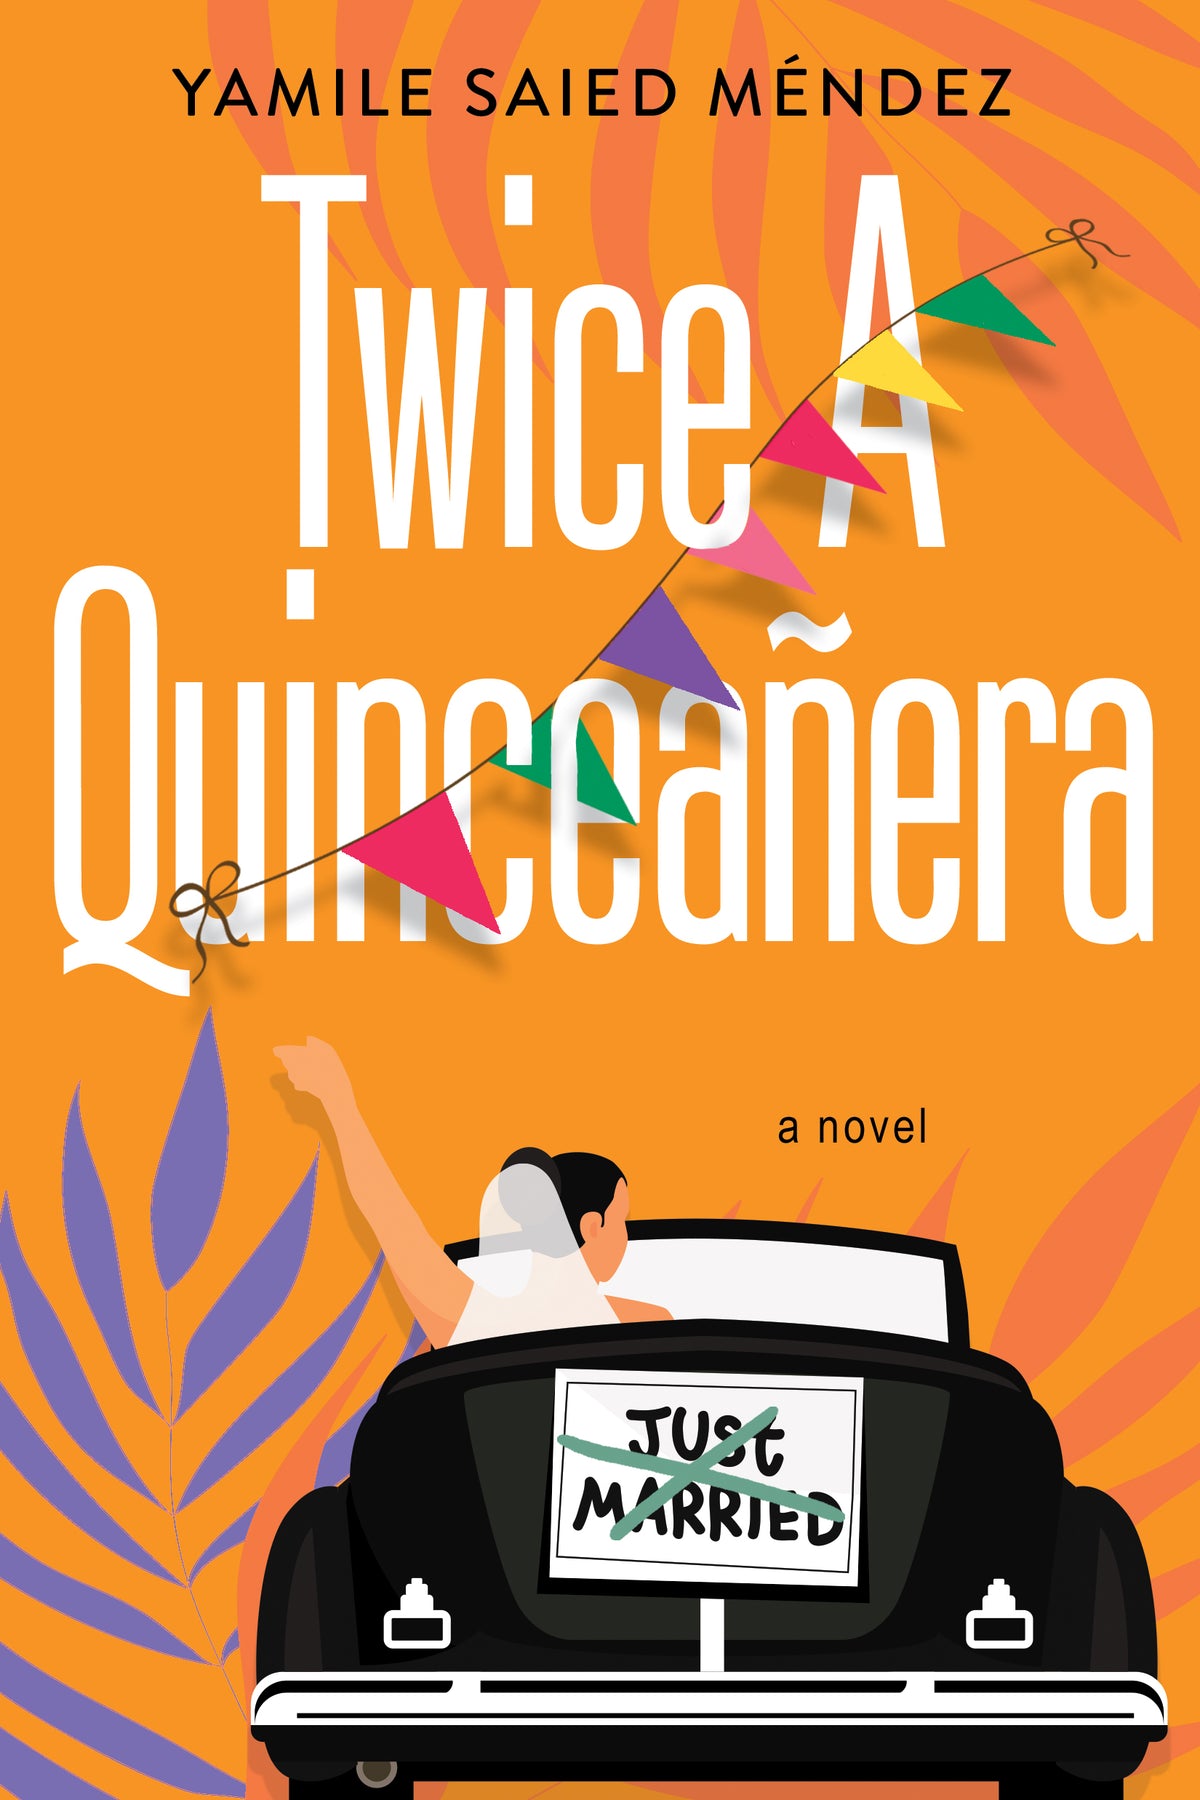 Twice A Quinceañera